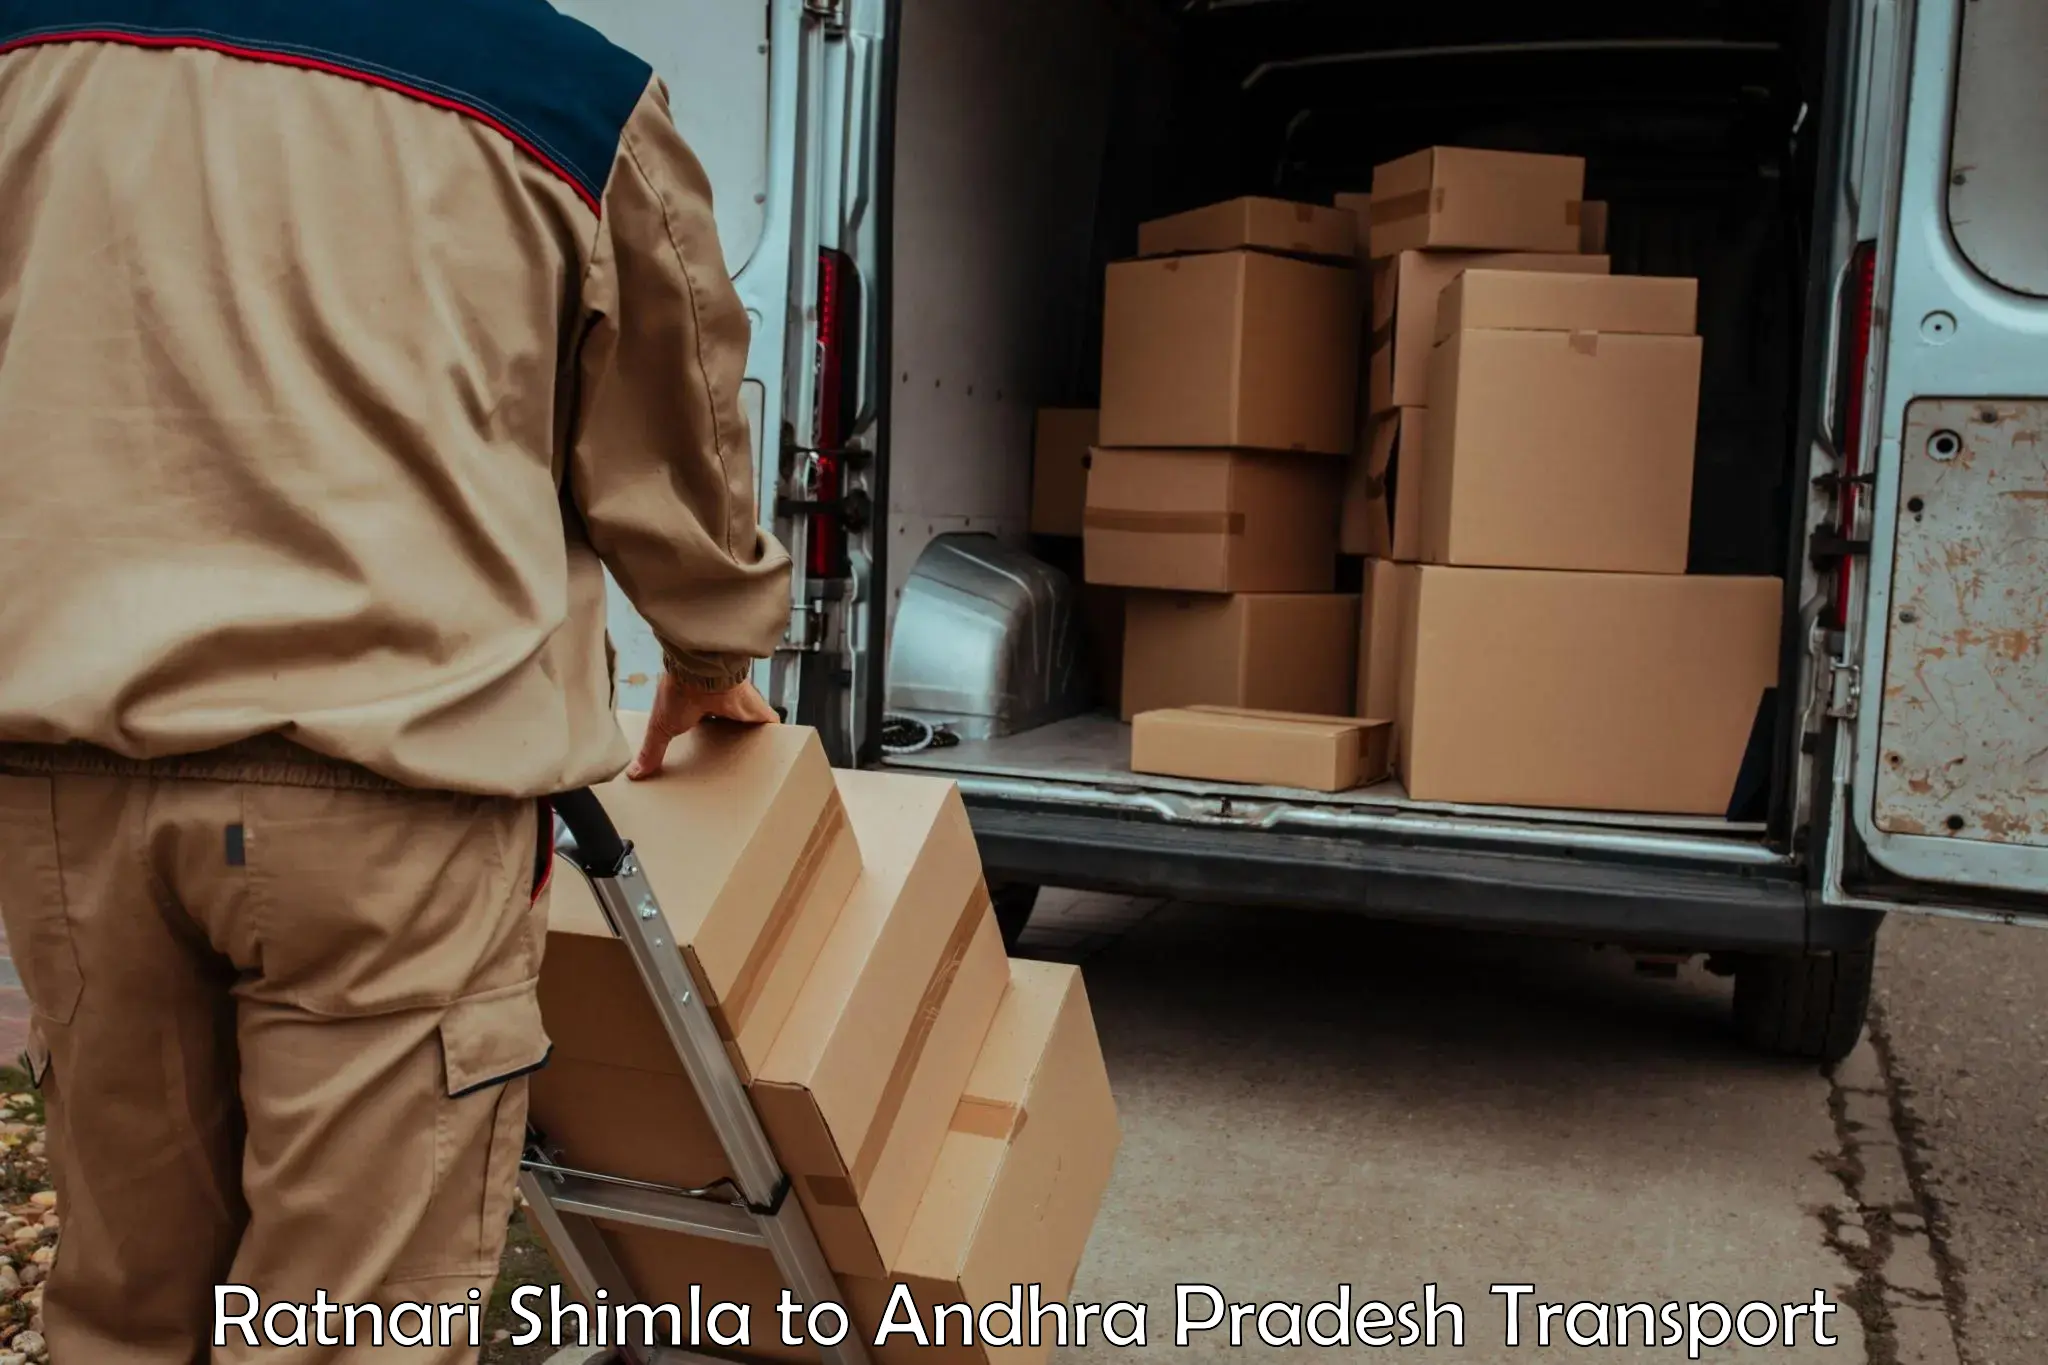 Cargo transport services Ratnari Shimla to Konduru